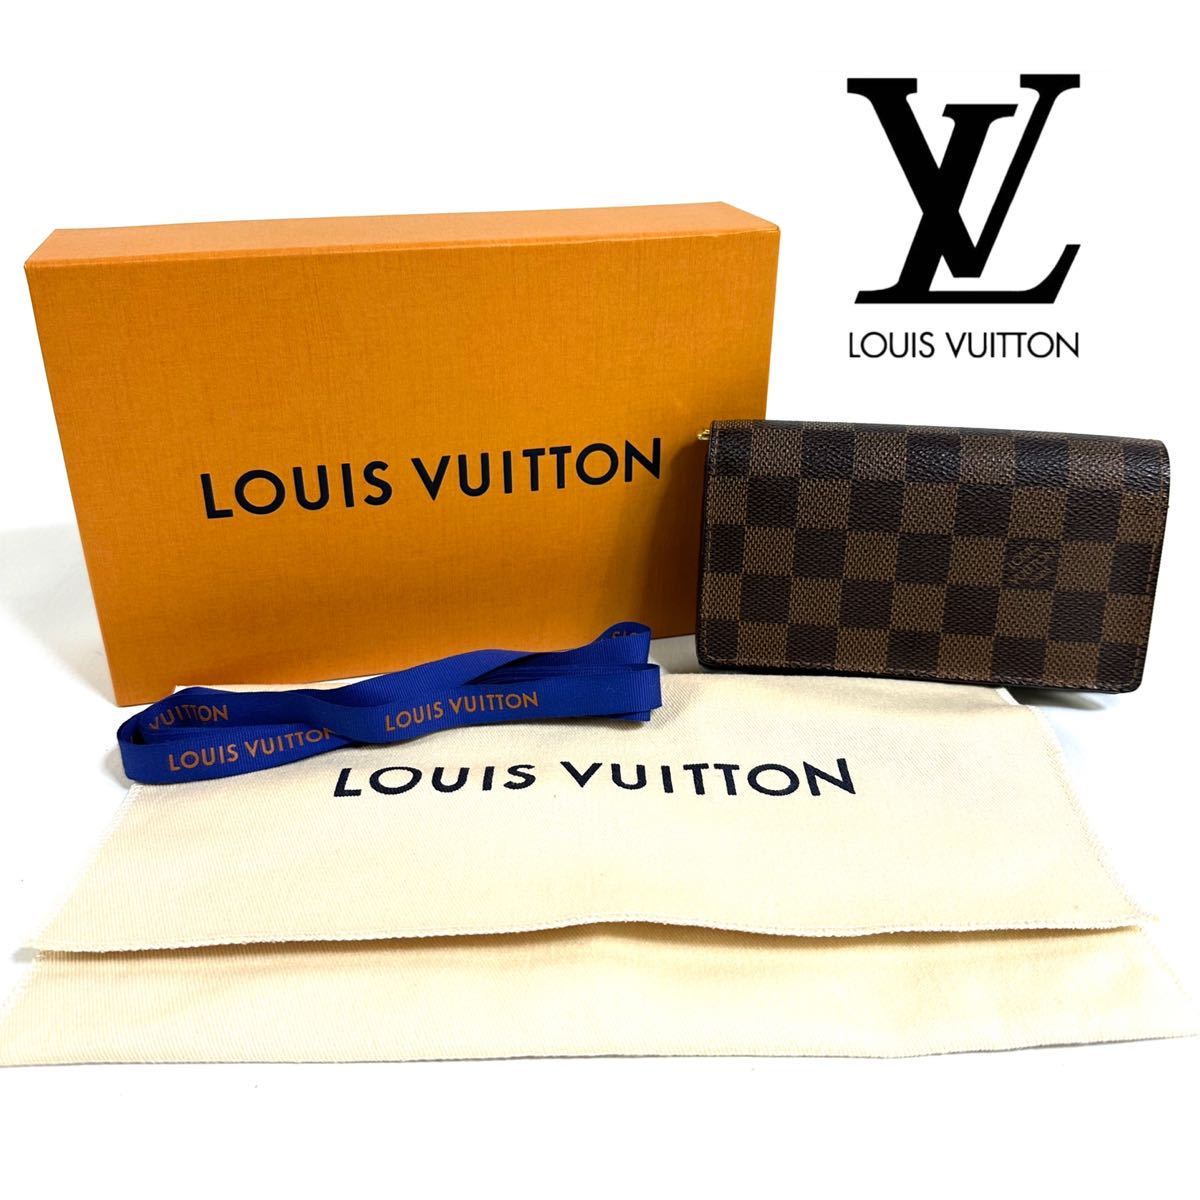 【極美品】LOUIS VUITTON ルイ ヴィトン ダミエ ポルトフォイユトレゾール 2つ折り 財布 ジッピー ウォレット N61736 保存箱 保存袋付き